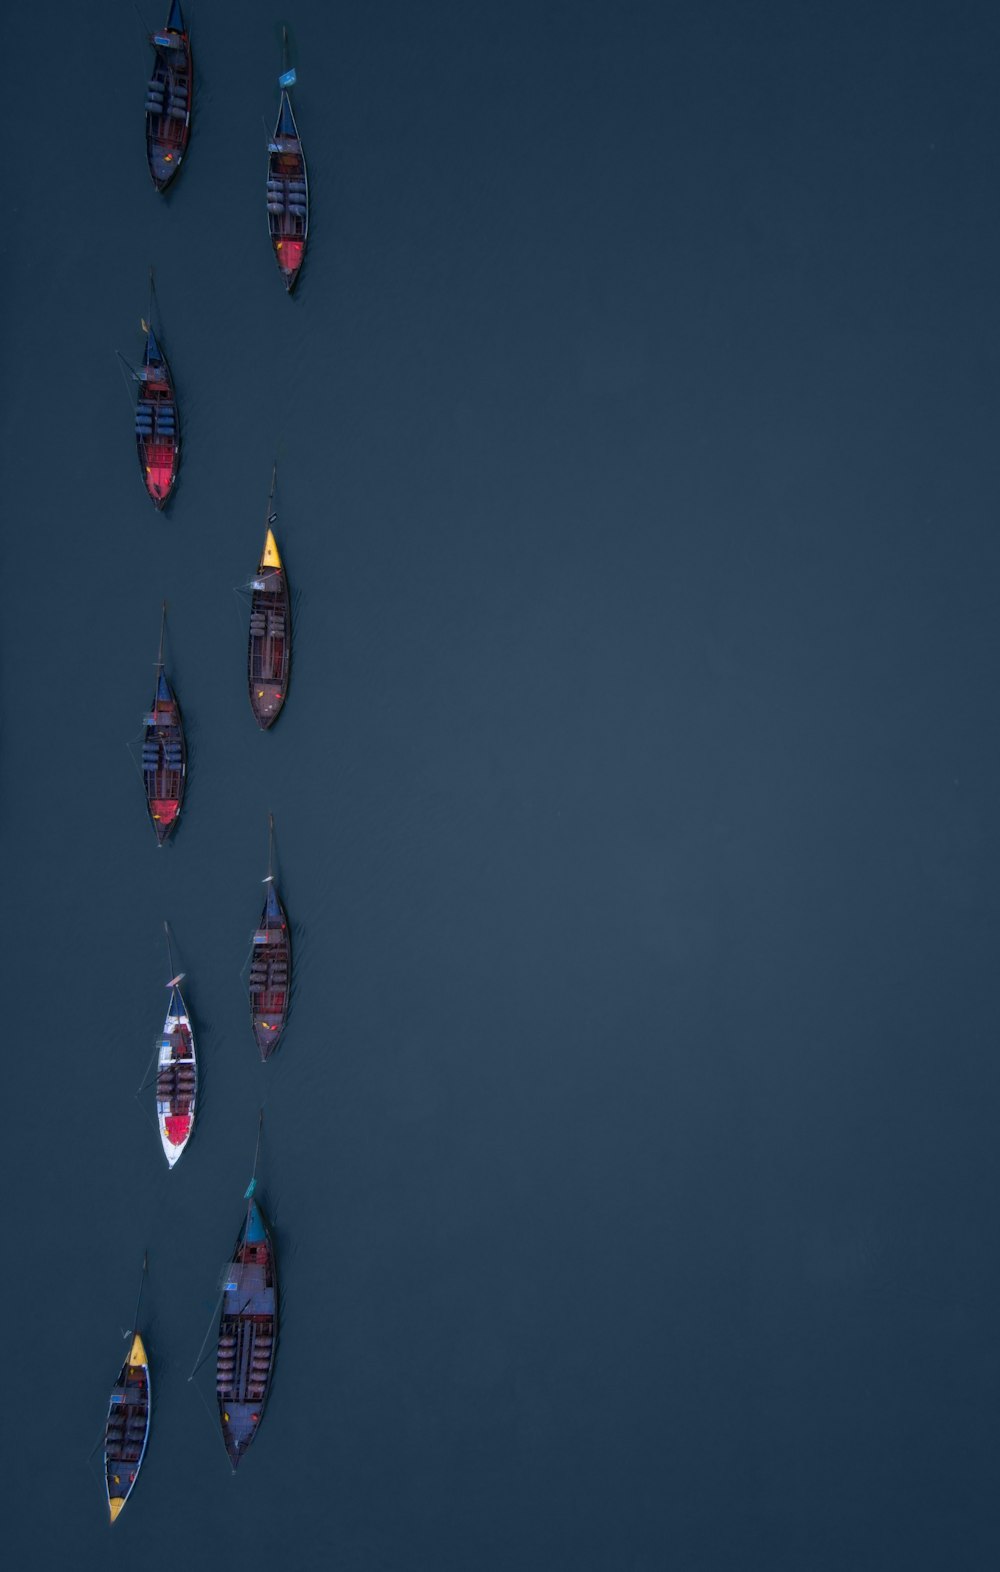 Un grupo de pequeñas embarcaciones flotando sobre un cuerpo de agua